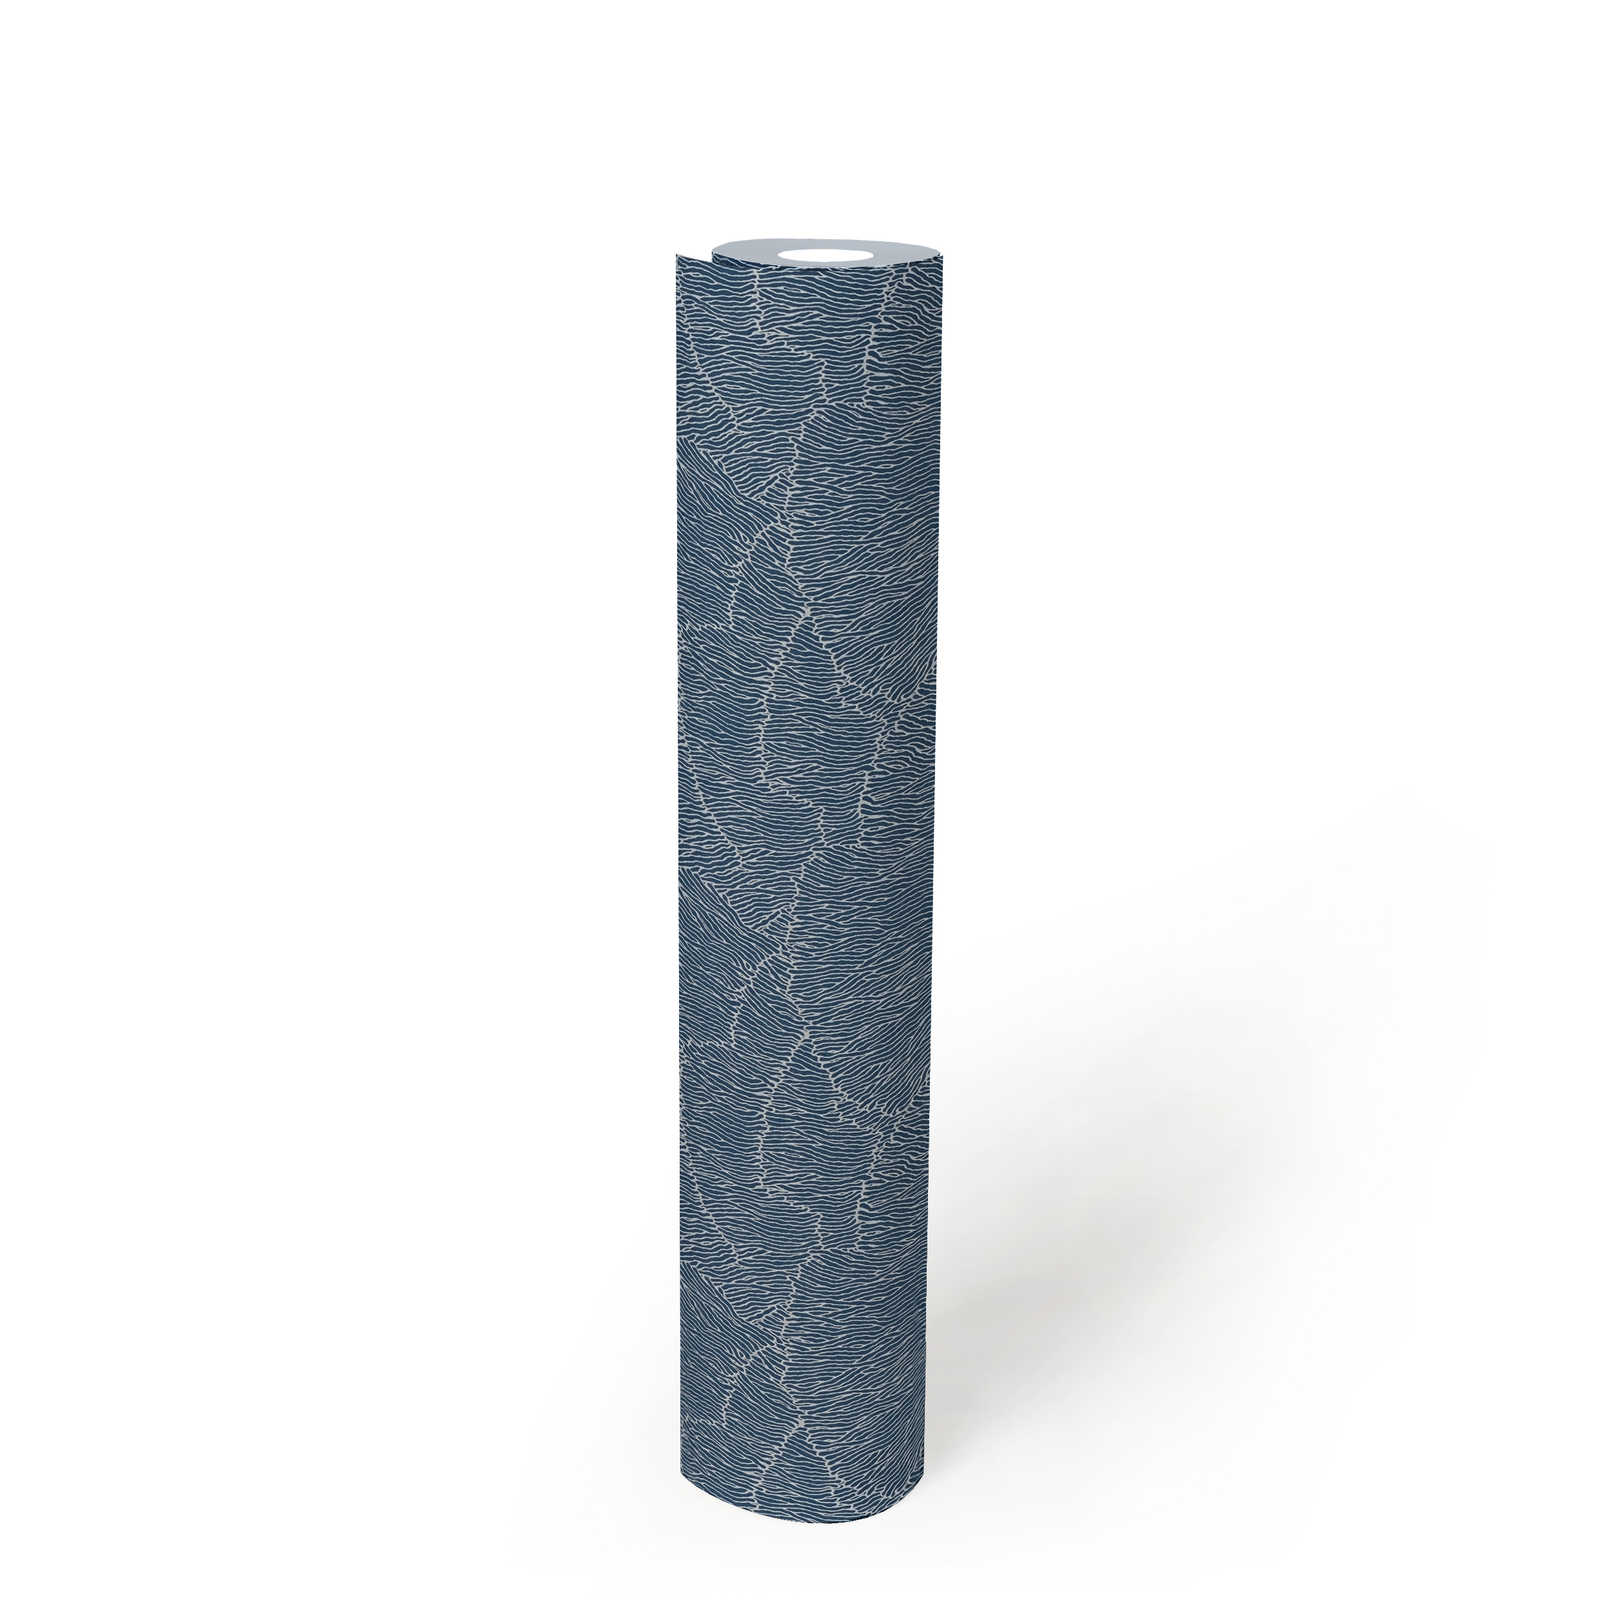             Papier peint intissé avec motifs de lignes - argent, bleu, métallique
        